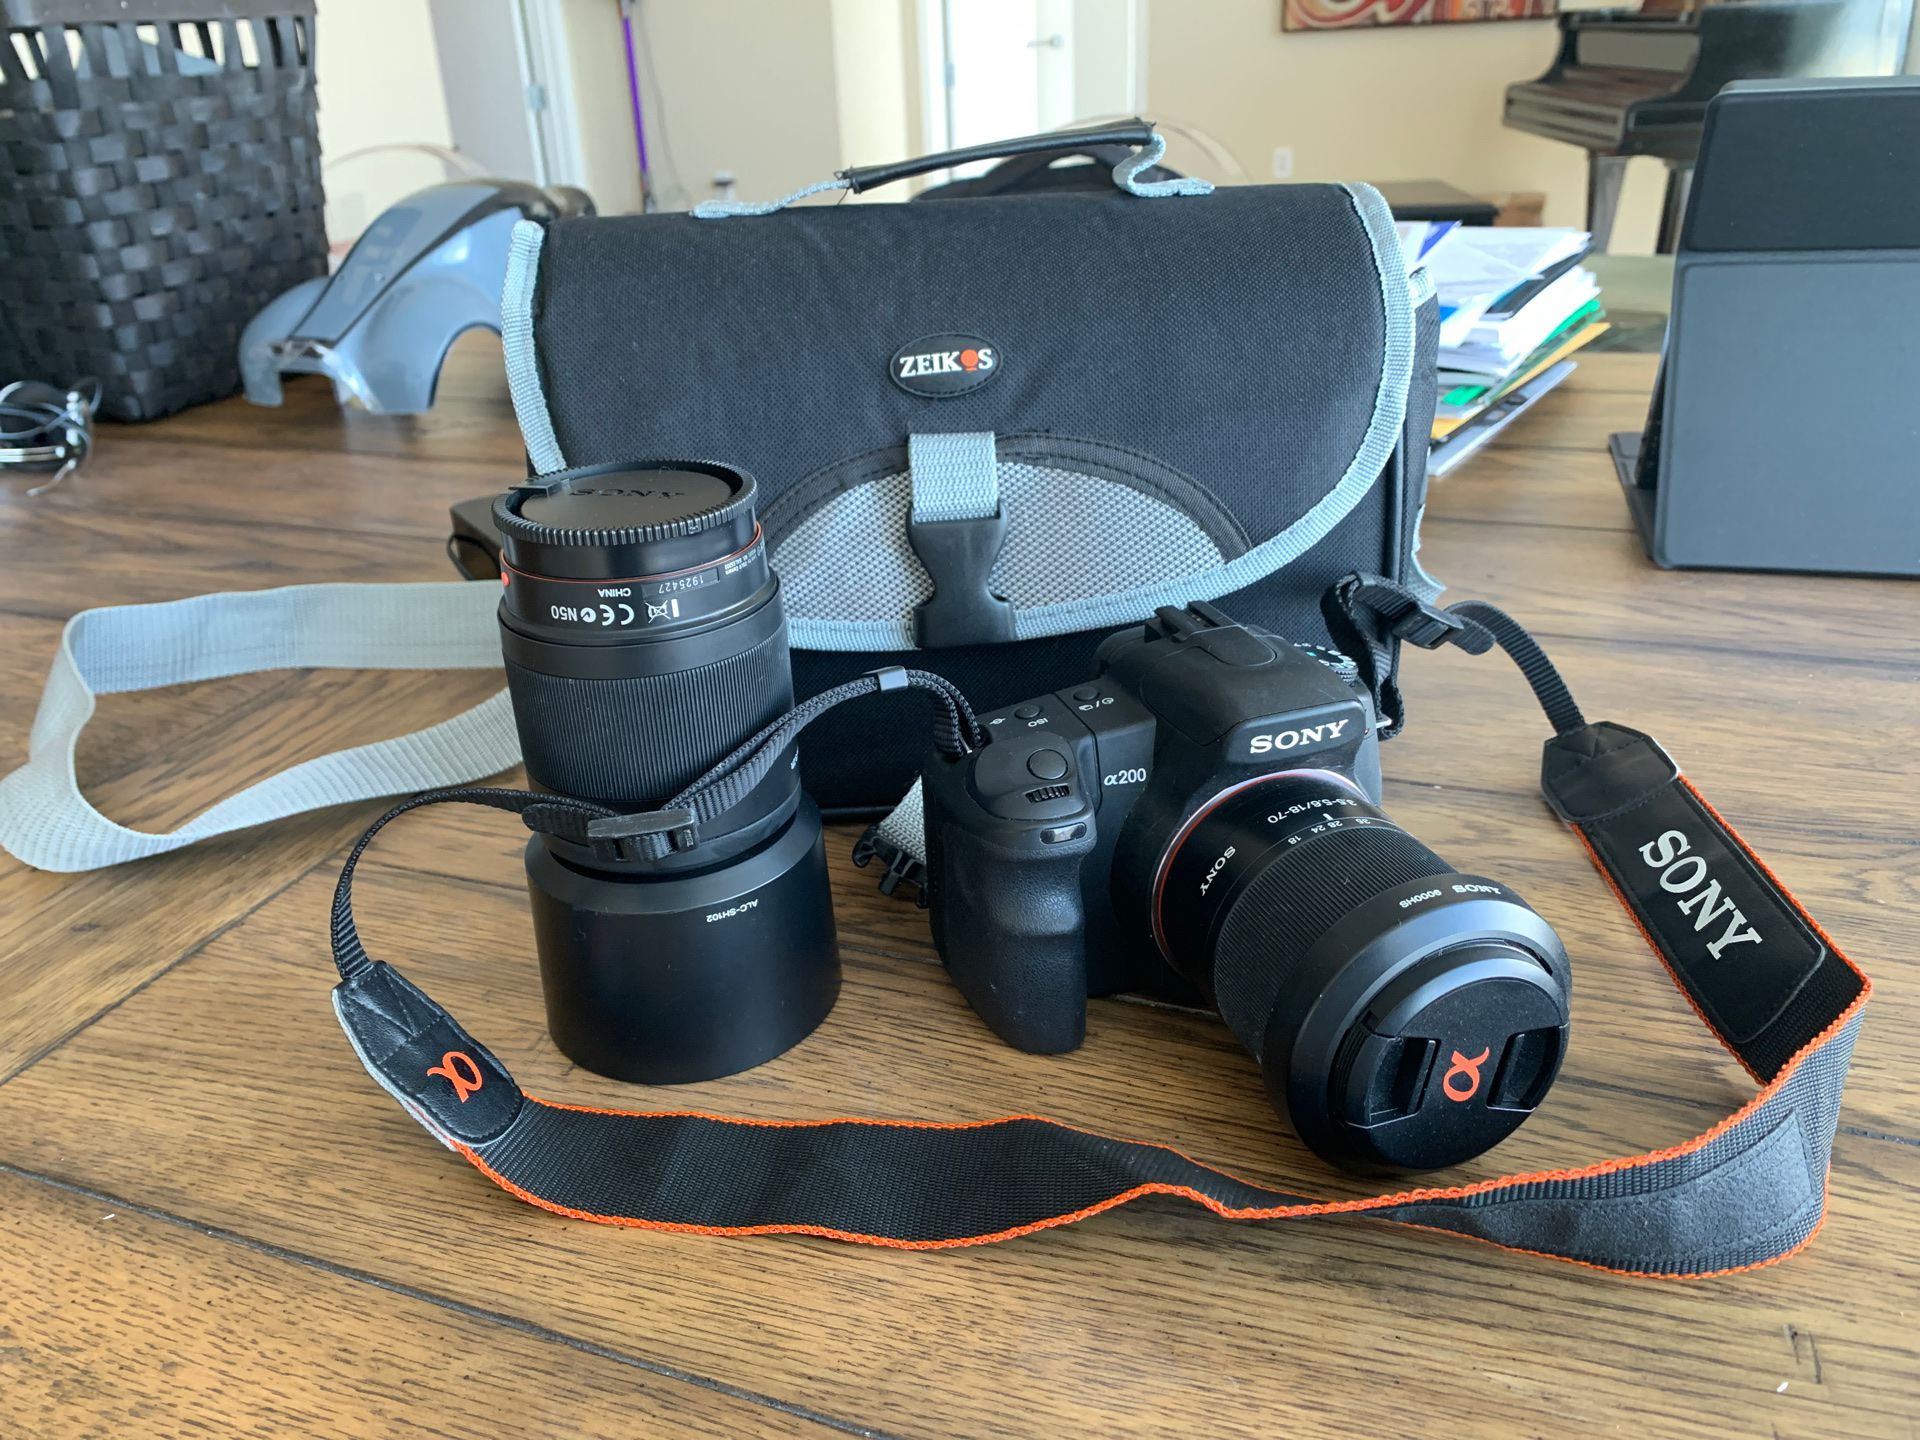 Sony alpha200 camera and additional 55-200 lens, camera bag